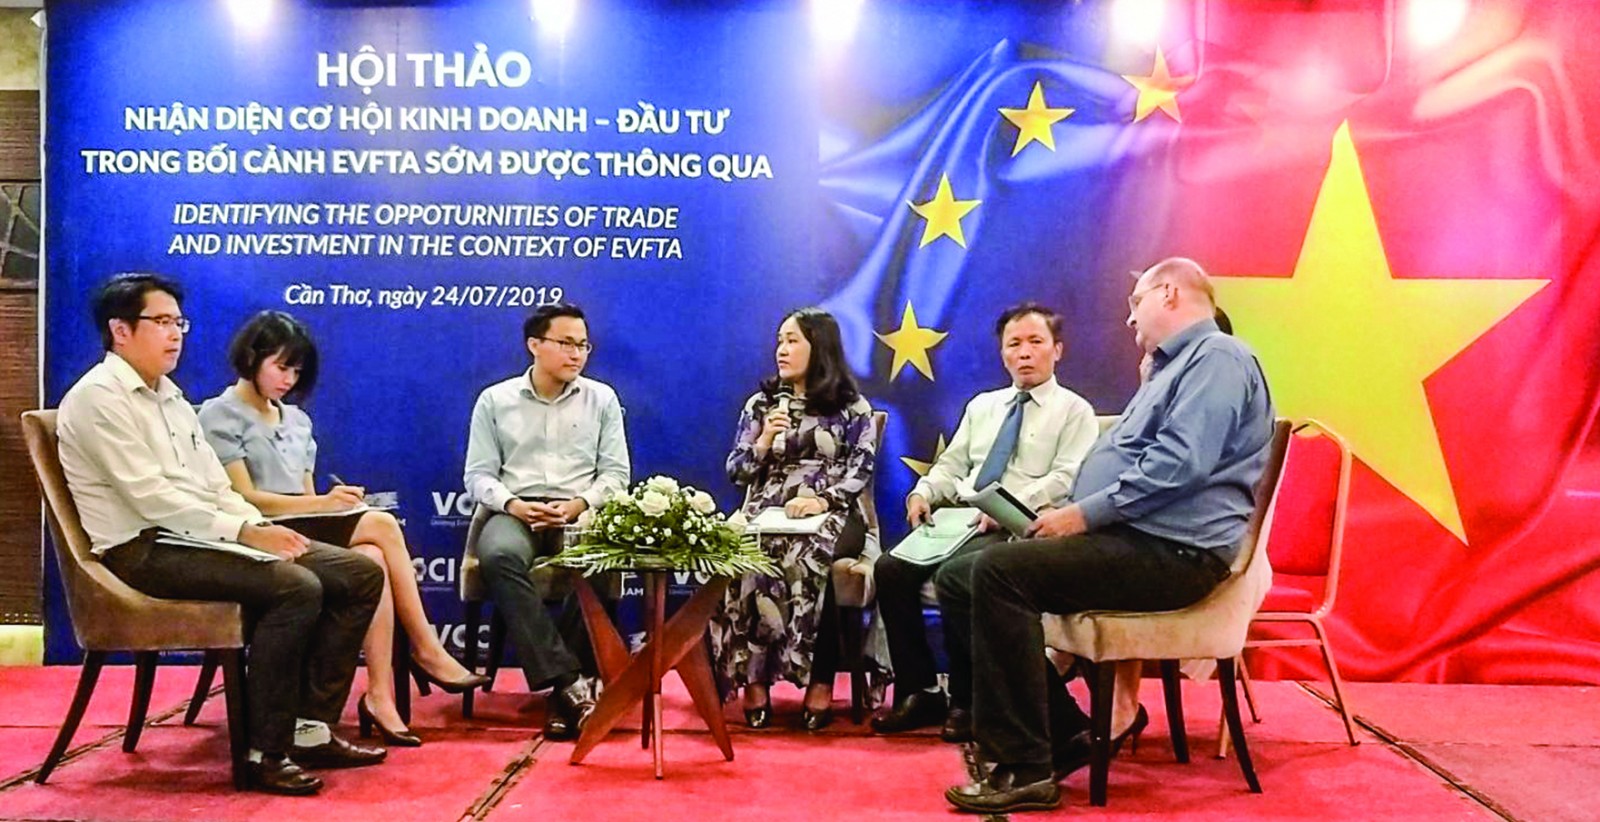 Các chuyên gia chia sẻ thông tin về EVFTA tại một Hội thảo do Phòng Thương mại và Công nghiệp Việt Nam (VCCI) và Trung tâm Trọng tài Quốc tế (VIAC) tại Việt Nam phối hợp tổ chức.